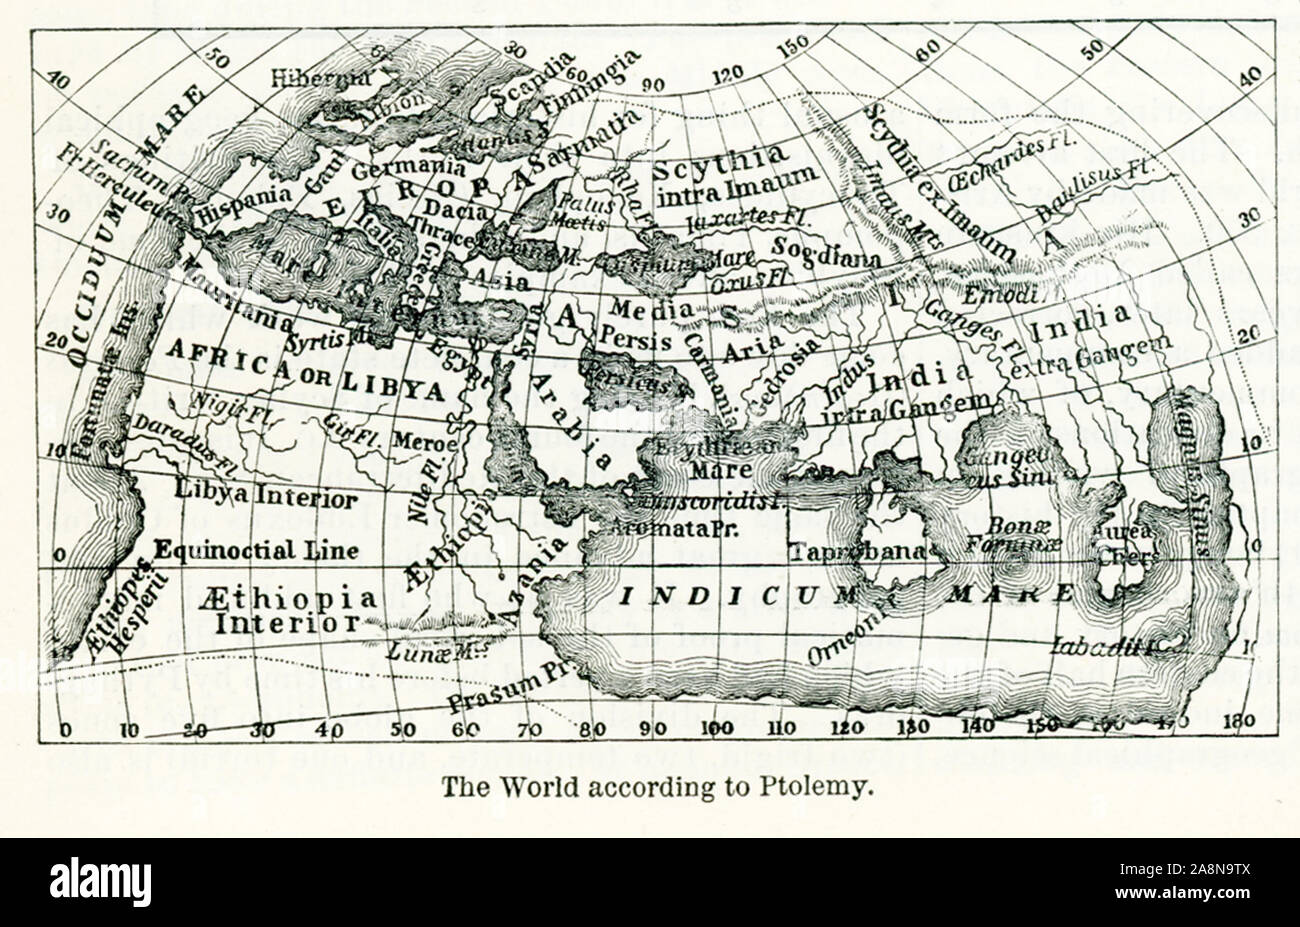 L'on voit ici est le monde selon Ptolémée, un astronome d'Alexandrie, qui vécut autour de 150 AD Son site était composé principalement de listes des endroits indiqués sur les cartes qui circulaient à l'époque et qu'il fait ses autorités. Il a ajouté les latitudes et longitudes. Banque D'Images